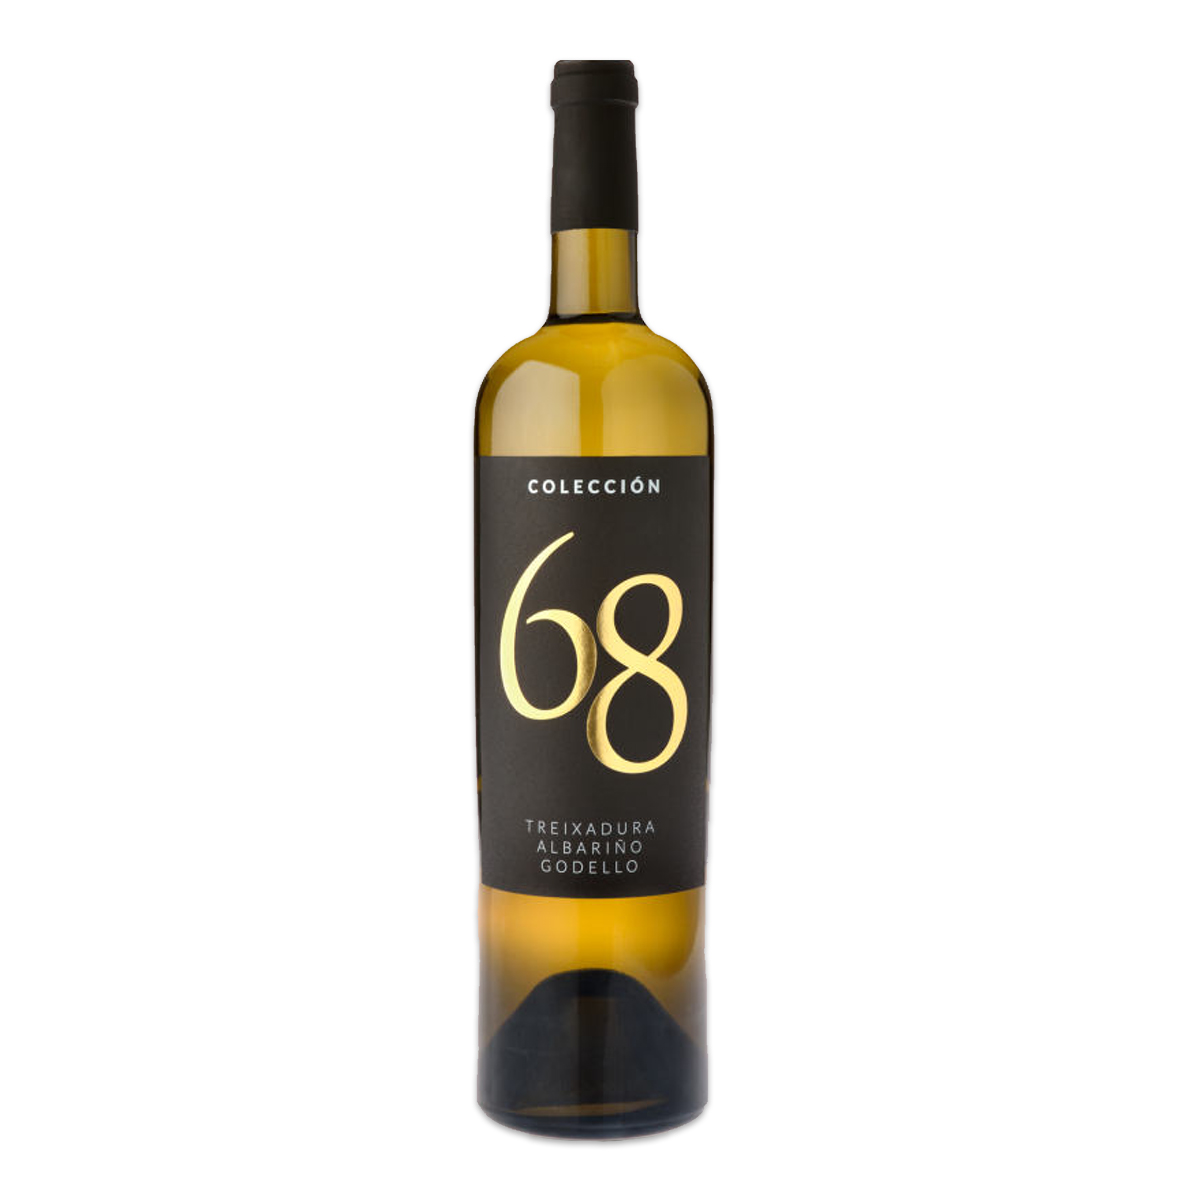 Colección 68 2019, White Wine, DO Ribeiro 2019年份河岸产区 精选68 干白葡萄酒